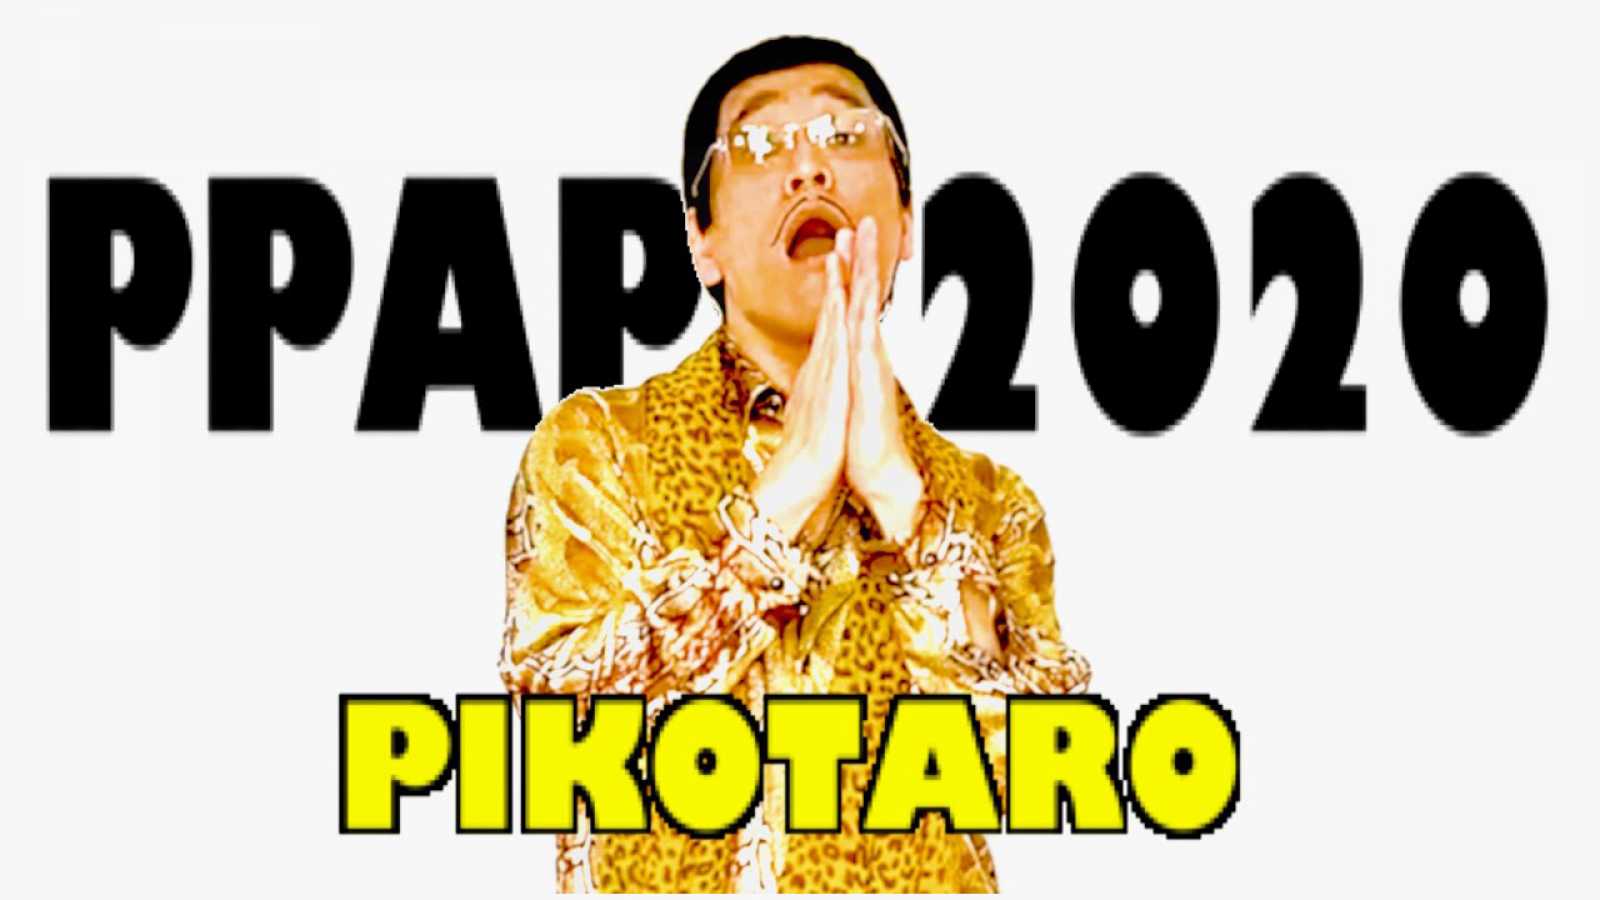 PIKOTARO revela una nueva versión de "PPAP" para promover el lavado de manos © PIKOTARO. All rights reserved.